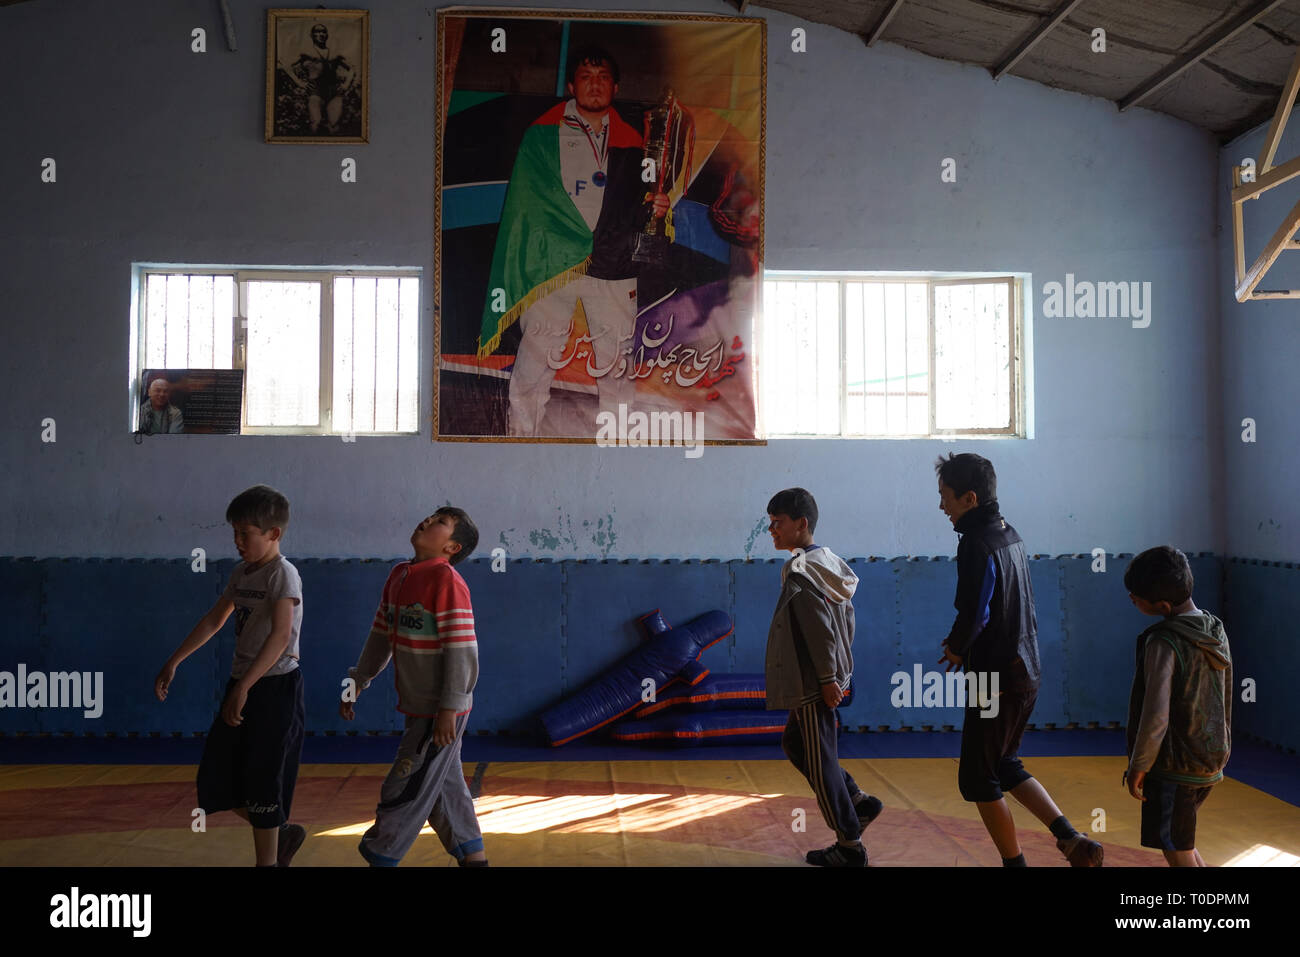 Die maiwand Wrestling Club wurde durch Selbstmordattentäter der Islamischen Staat im Irak und der Levante (ISIL oder ISIS) Gruppe im vergangenen September angegriffen. Mindestens 20 Menschen wurden getötet und 70 im Angriff an der Verein in Dash verwundet - e - Barchi, eine Nachbarschaft in Kabul West, Haus zu einem beträchtlichen Hazara Community. Trainer Ghulam Abbas seinen linken Arm, was er sagte, ein Angriff auf die ethnischen Hazara Minderheit war verloren. In einem Akt des Widerstands, Abbas hat nun dem Wrestling Club, wo er für 30 Jahre unterrichtet. Stockfoto